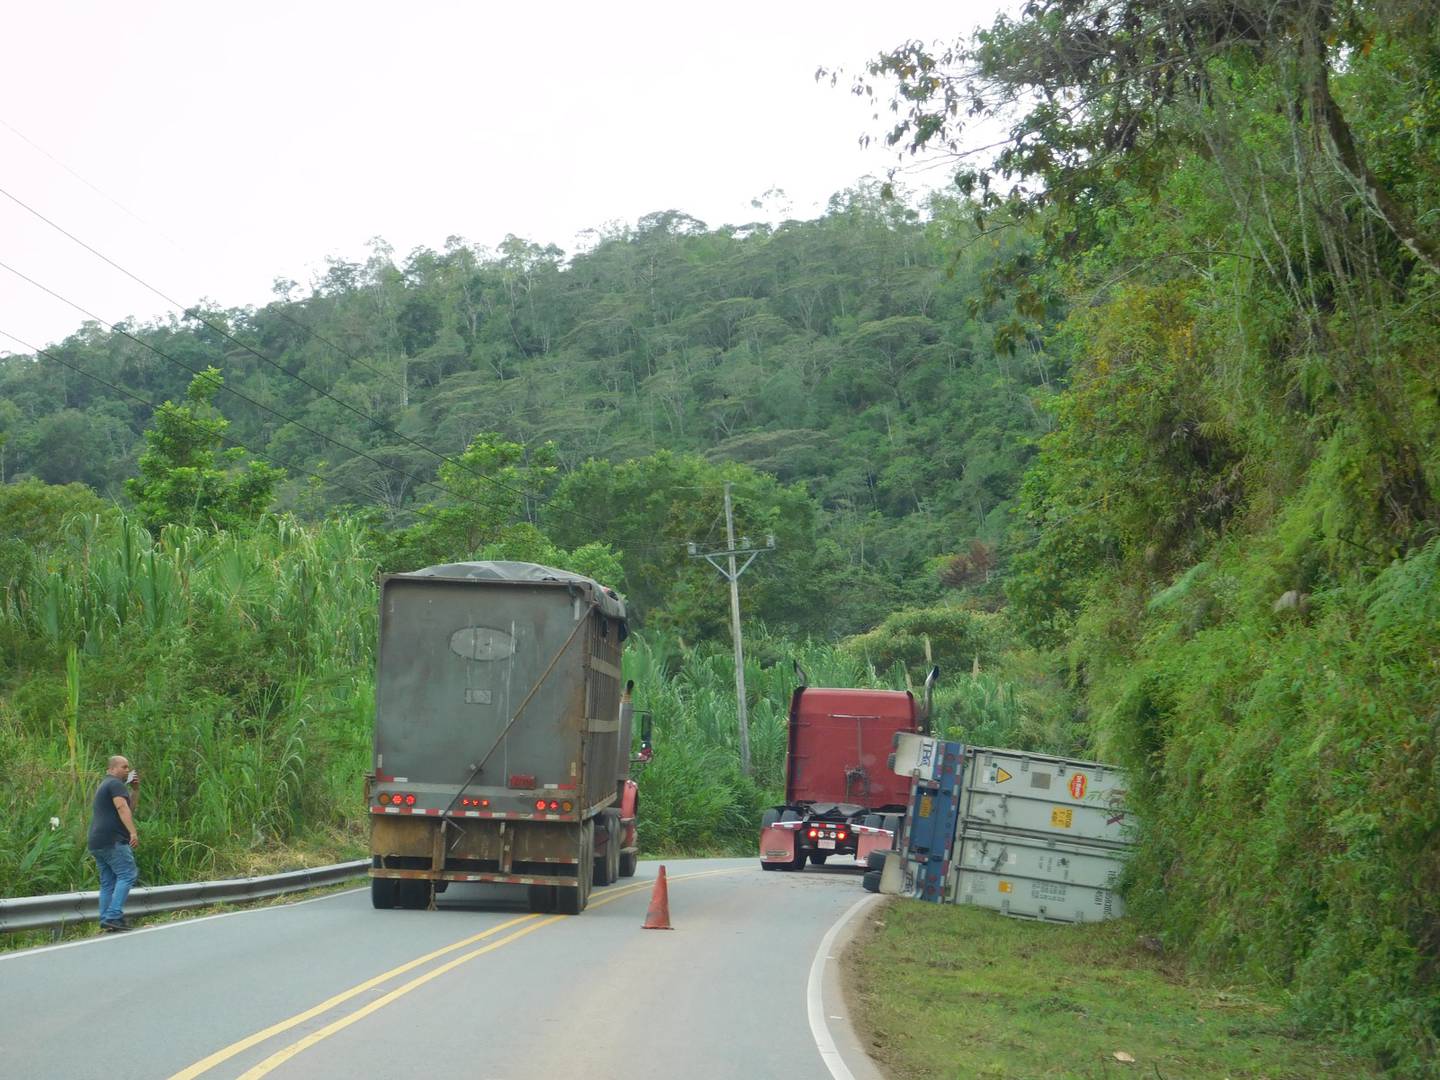 El pasado mes de noviembre nos demostró a todos los costarricenses que sí se pueden bajar los números de muertes en carretera ya que fue el mes con menos fallecidos, 33 en total, según confirma la Policía de Tránsito